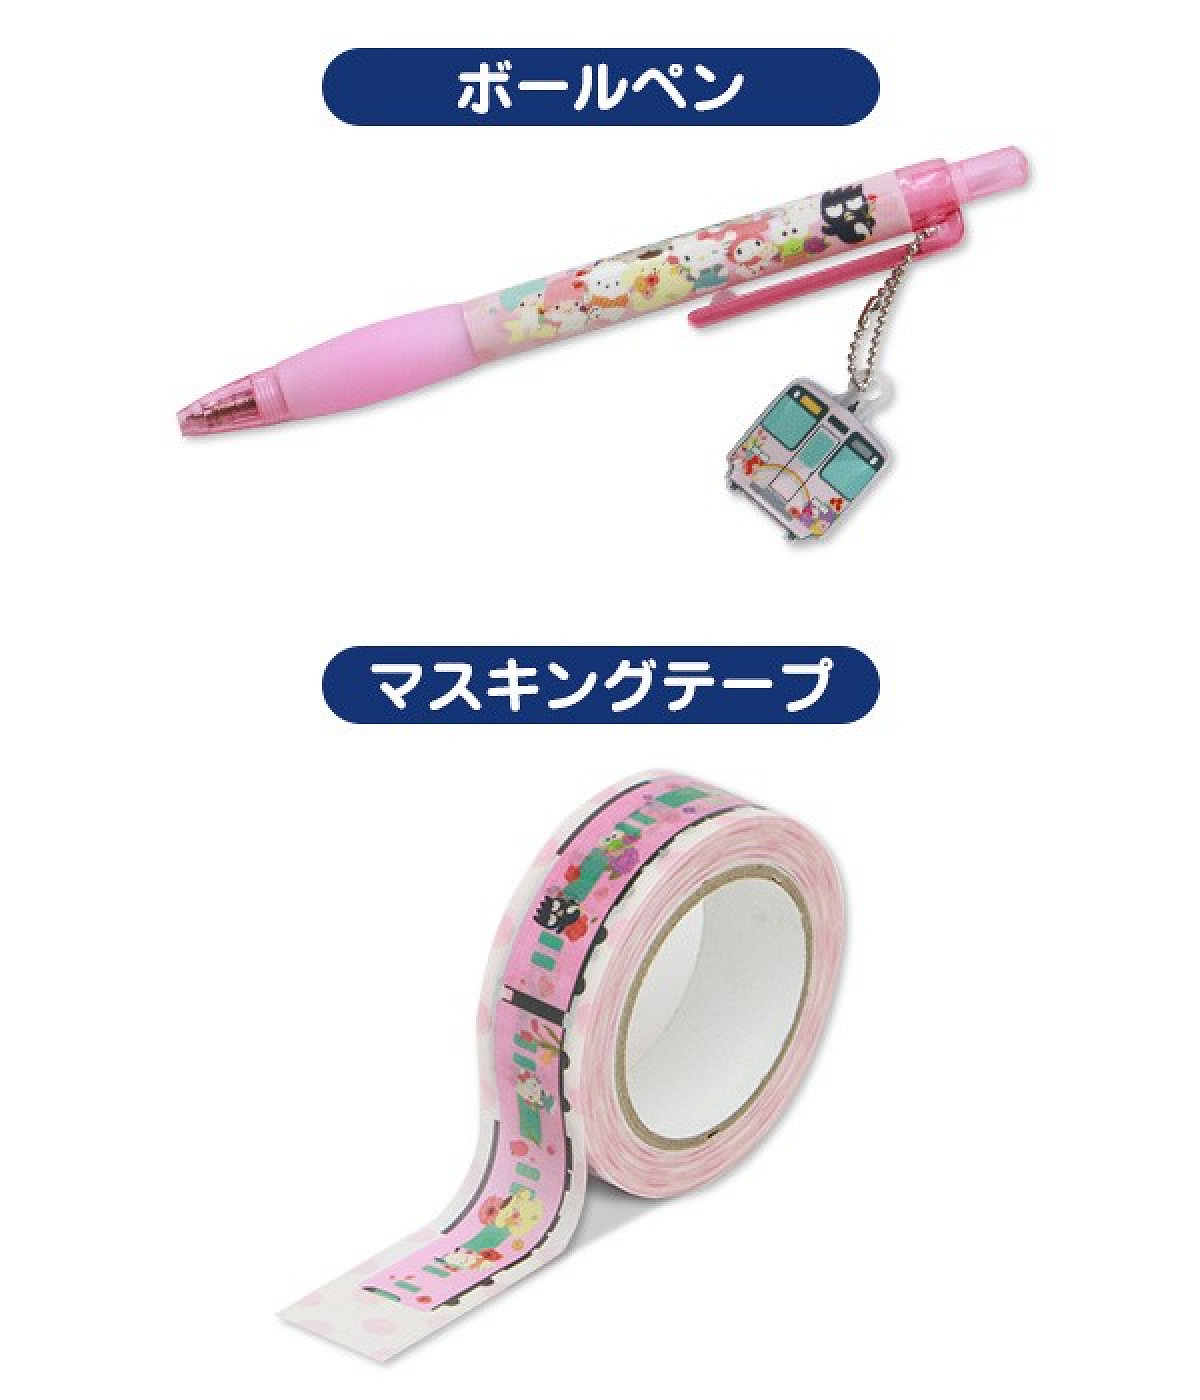 KEIO x Sanrio Puroland フルラッピングトレインのオリジナル商品 ボールペン・マスキングテープ